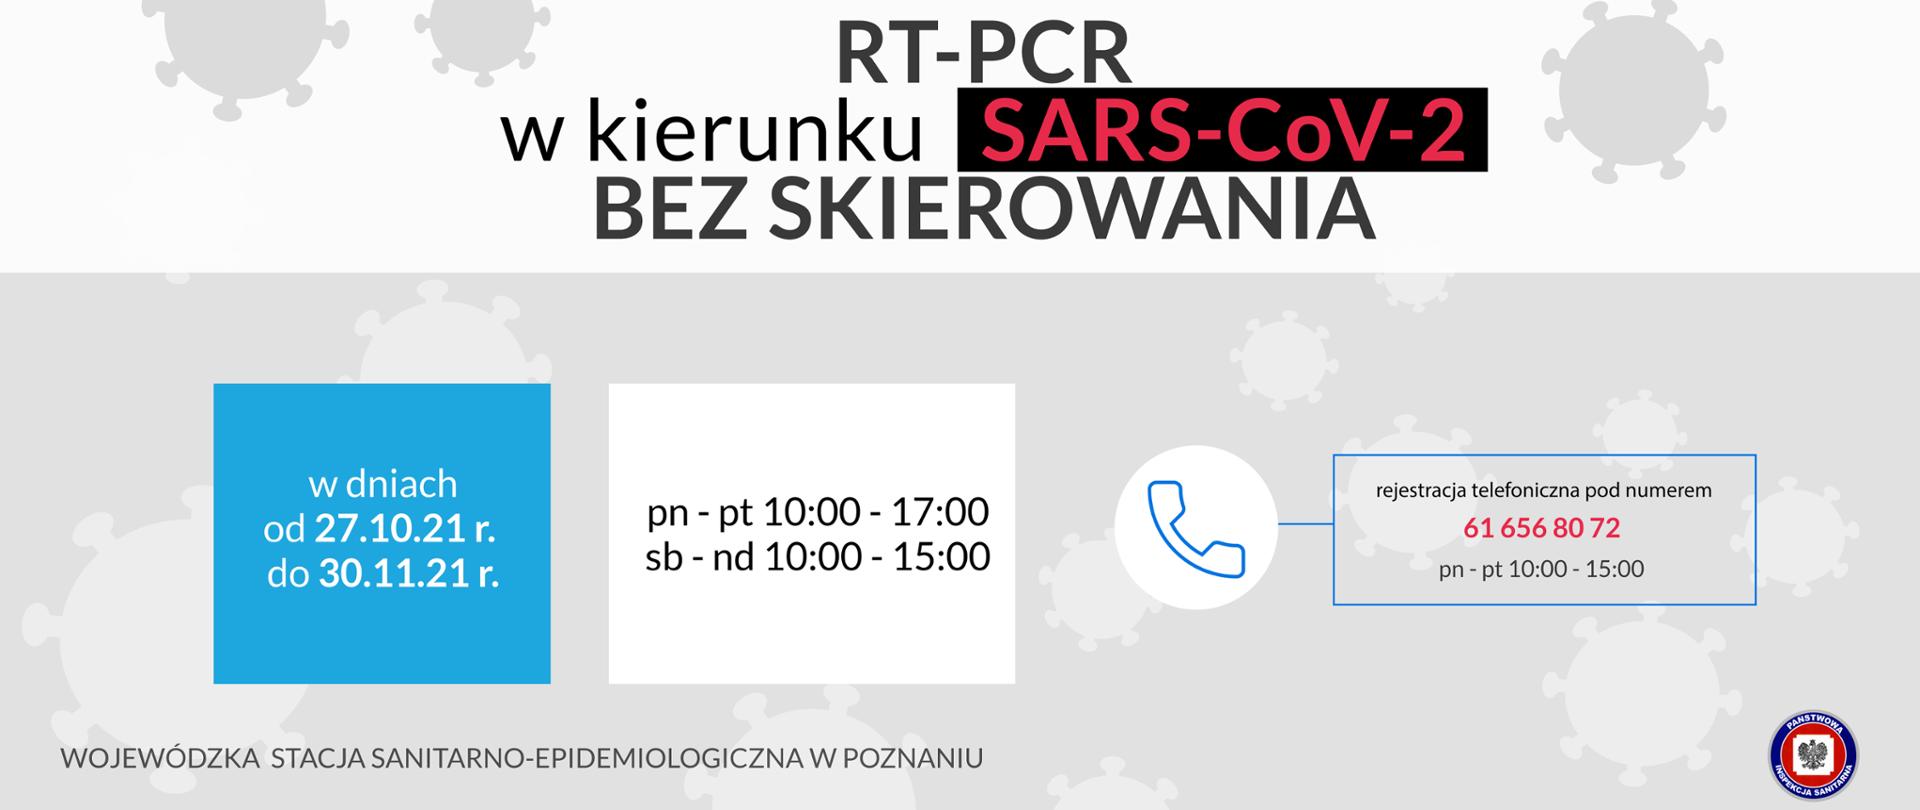 plakat bezpłatne wymazy RT-PCR w kierunku SARS-CoV-2 bez skierowania w dniach 27.10-30.11.2011, od poniedziałku do piątku 10:00-17:00, soboty i niedziele 10:00-15:00, rejestracje pod numerem 616568072 w godzinach 10:00-15:00